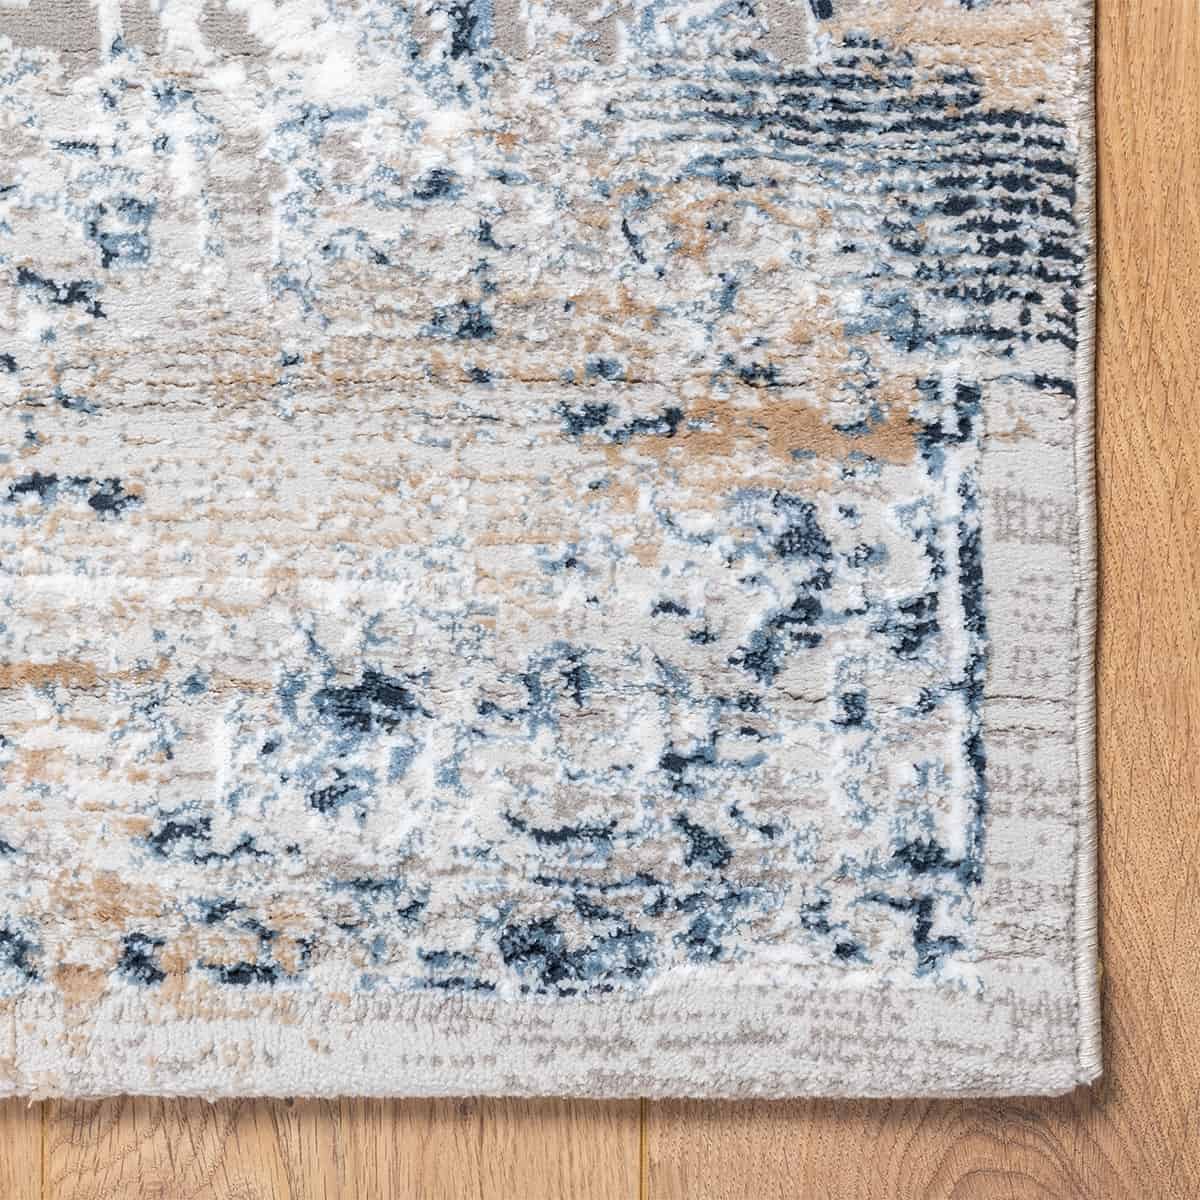  שטיח מדריד 19 כחול כהה/כחול | השטיח האדום 